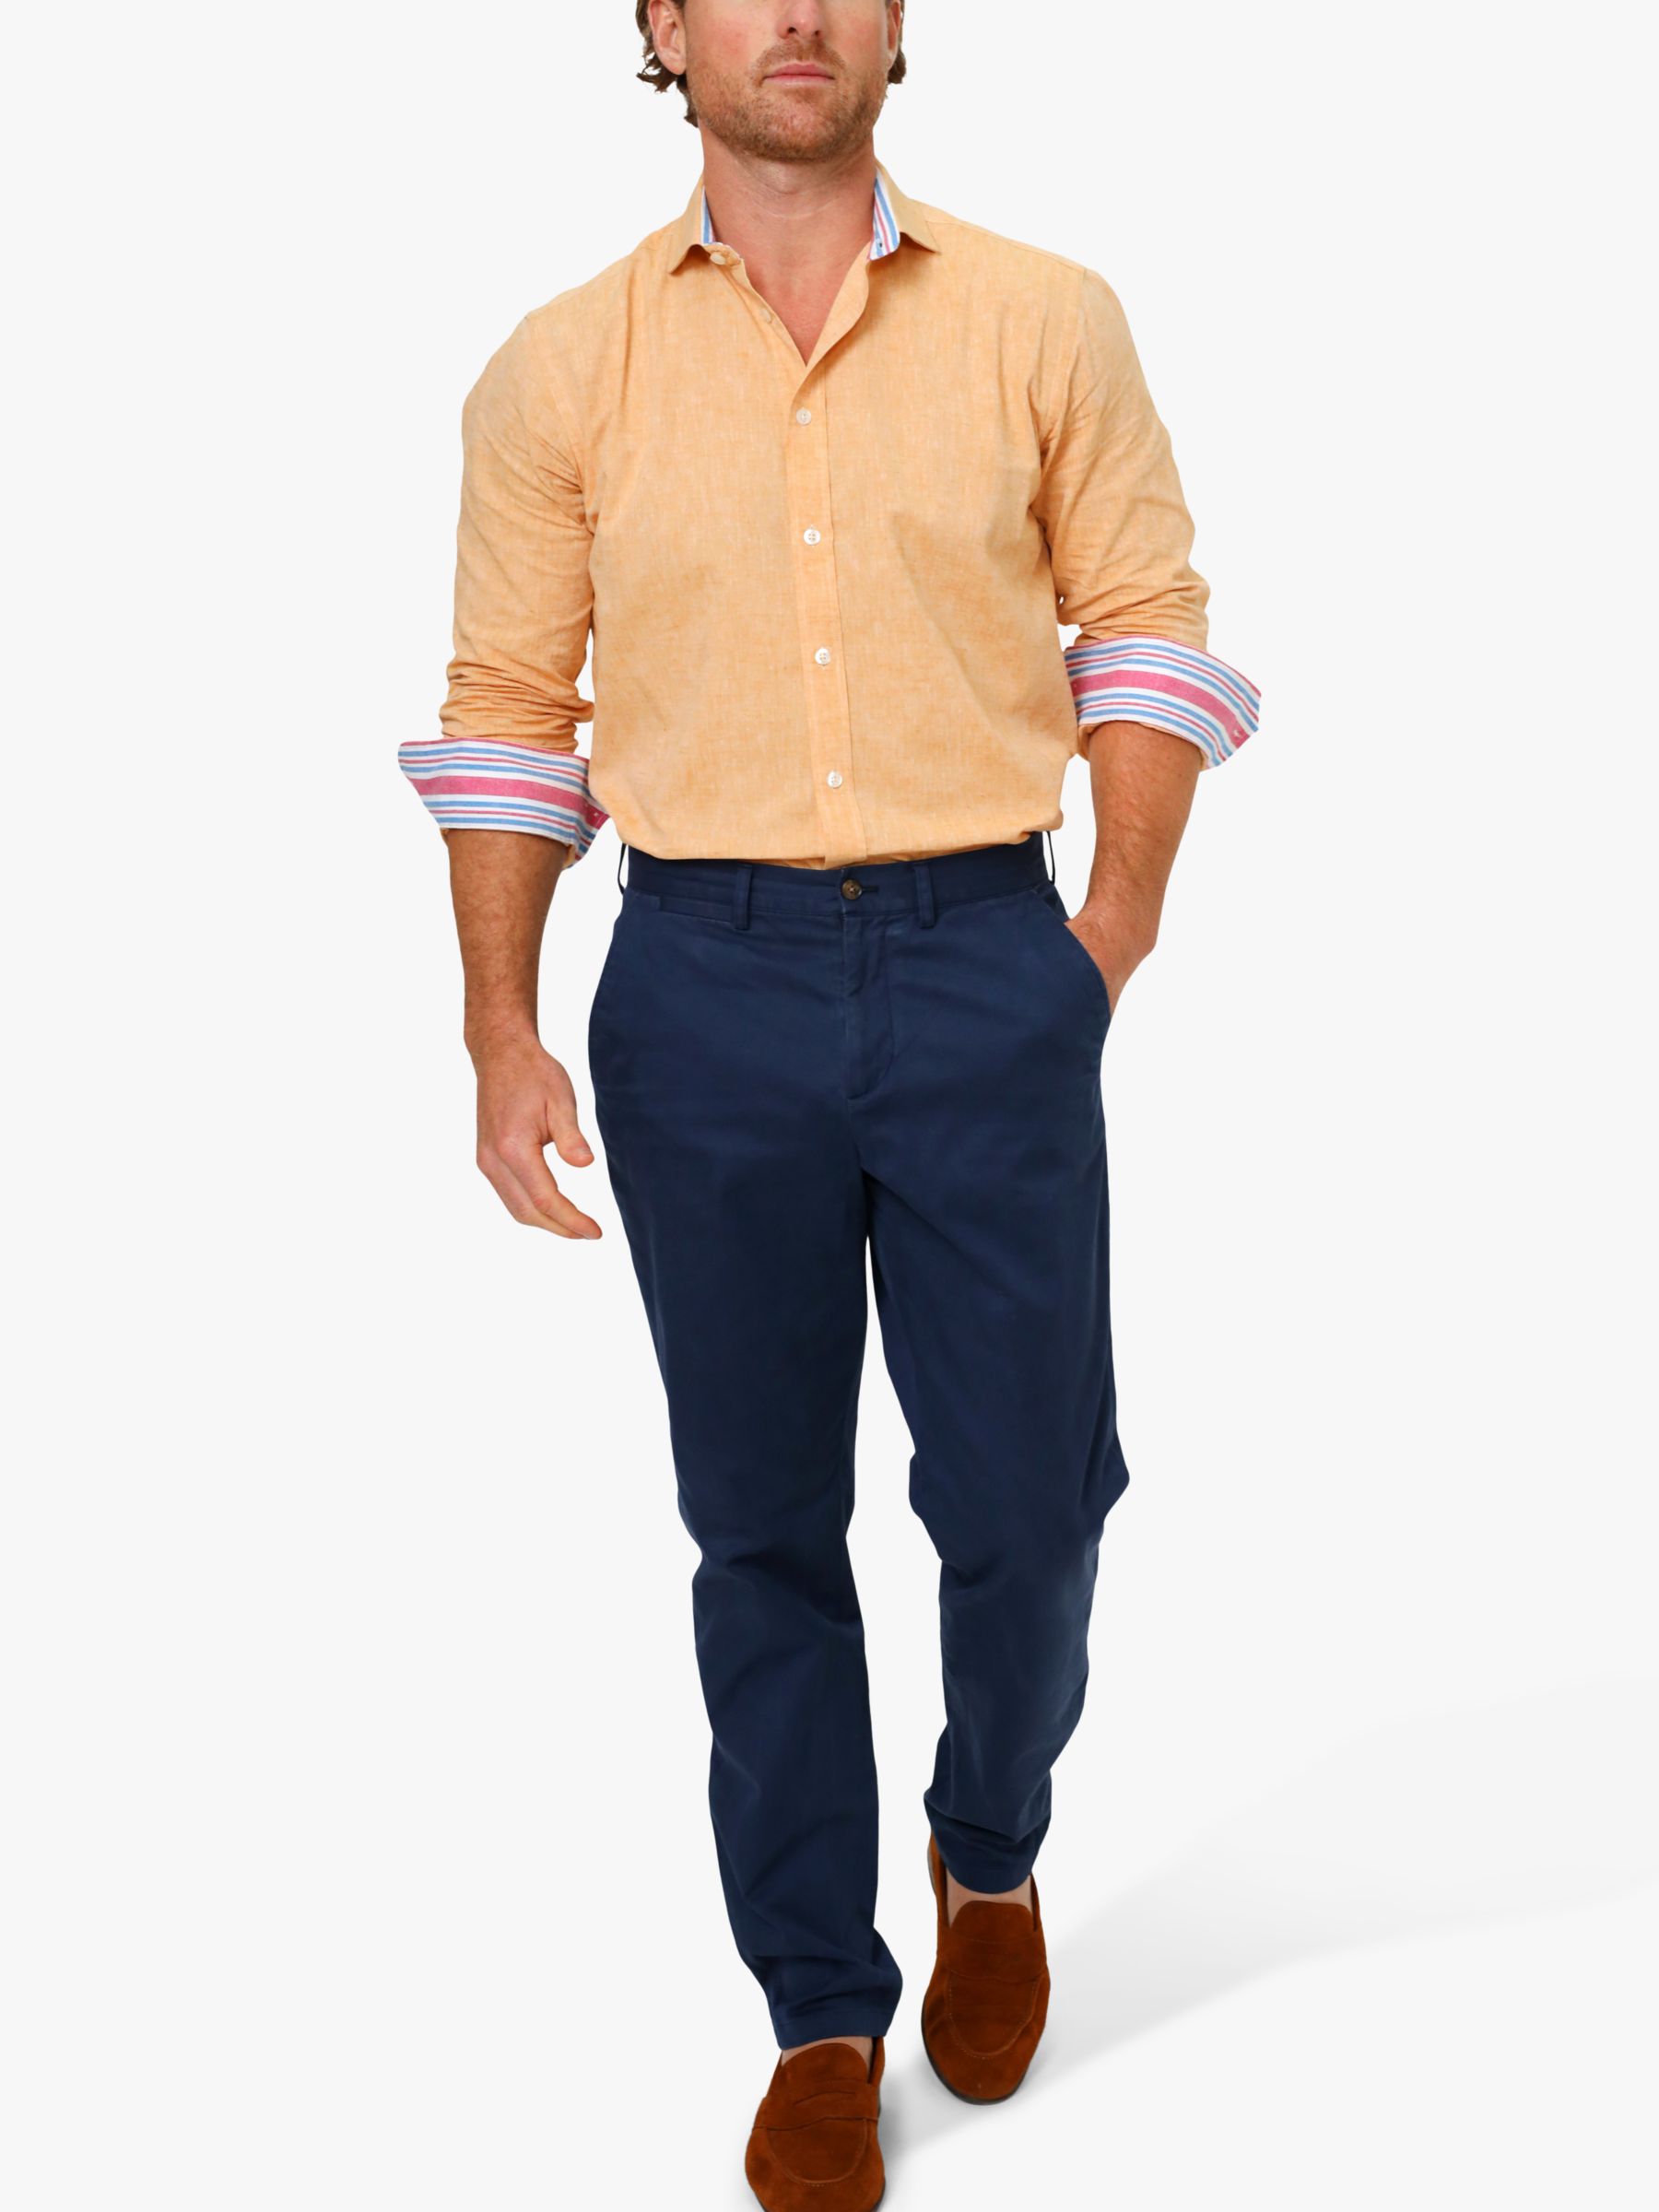 KOY Linen Blend Shirt, Tangerine, S